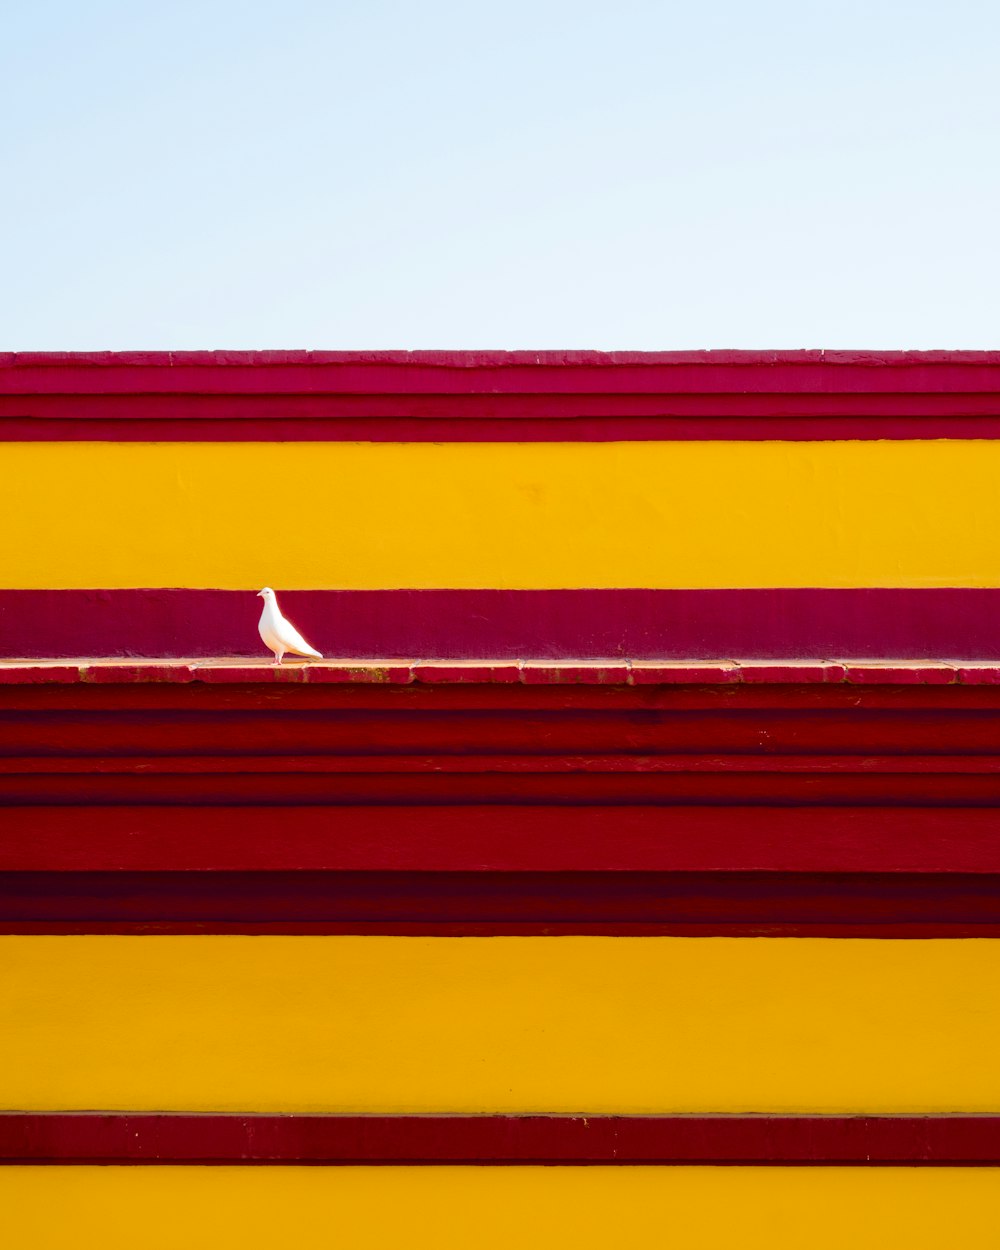 Un oiseau blanc assis au sommet d’un bâtiment rouge et jaune